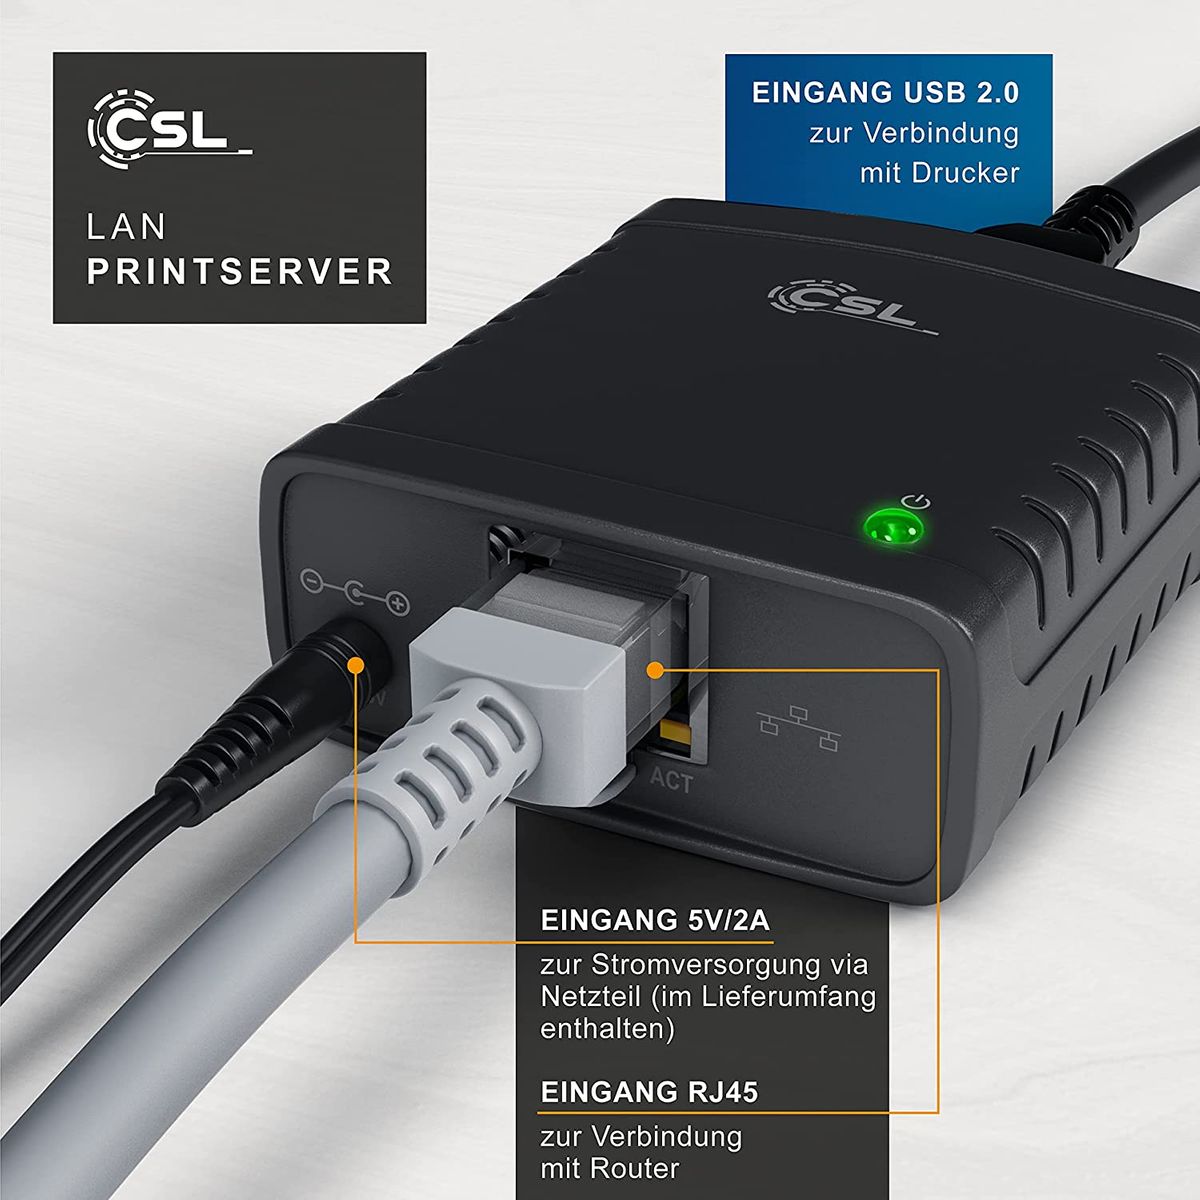 CSL LAN Printserver Druckerserver - Fast Ethernet - USB2.0 High Speed - LRP Print Server für Windows – Netzwerk USB zu RJ45 - DHCP fähig, TCP/IP – inkl. Netzteil und Ethernetkabel – Neues Modell